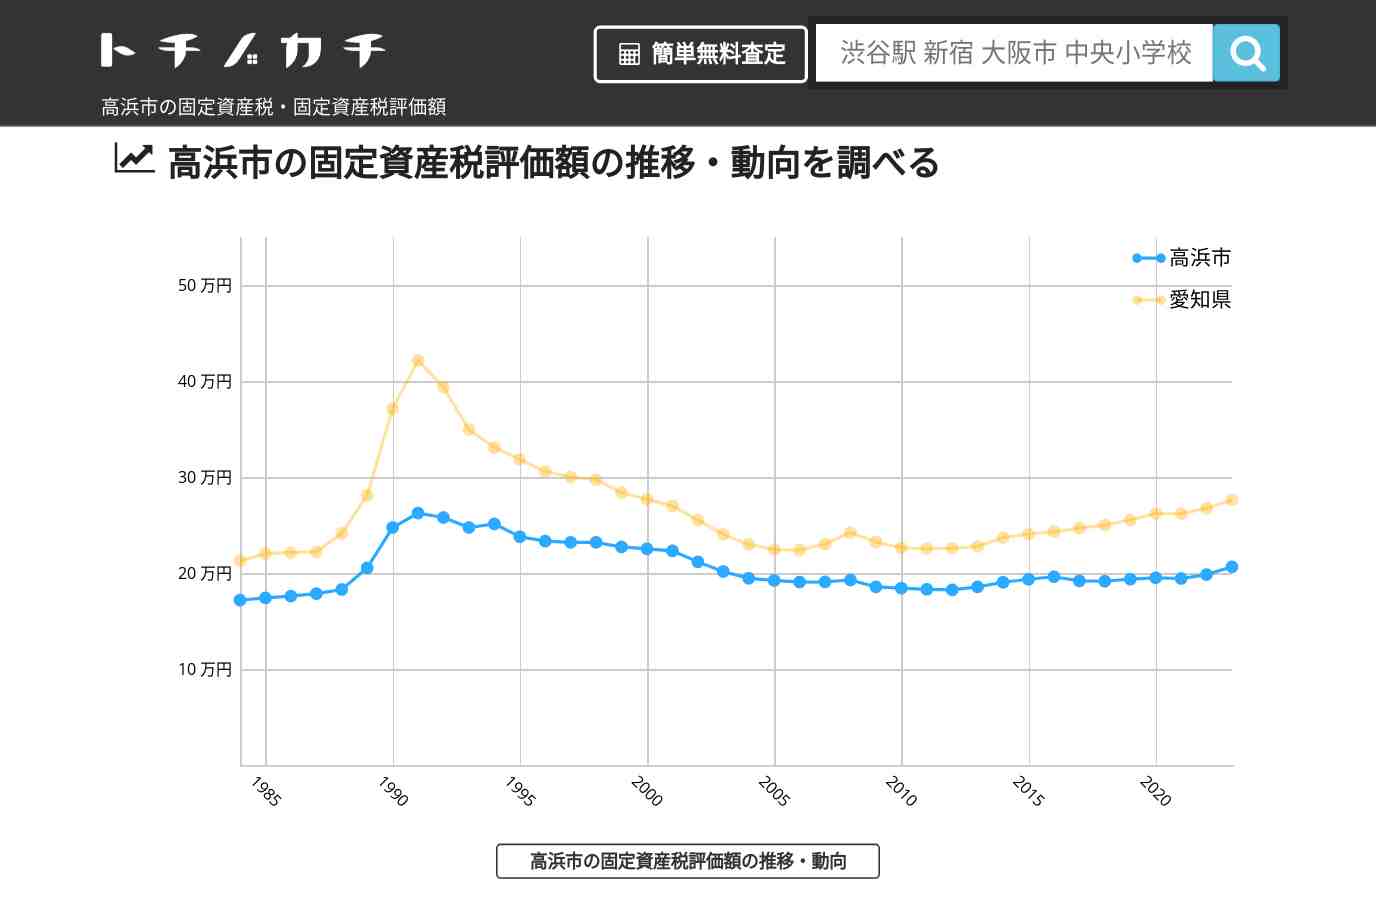 吉浜小学校(愛知県 高浜市)周辺の固定資産税・固定資産税評価額 | トチノカチ